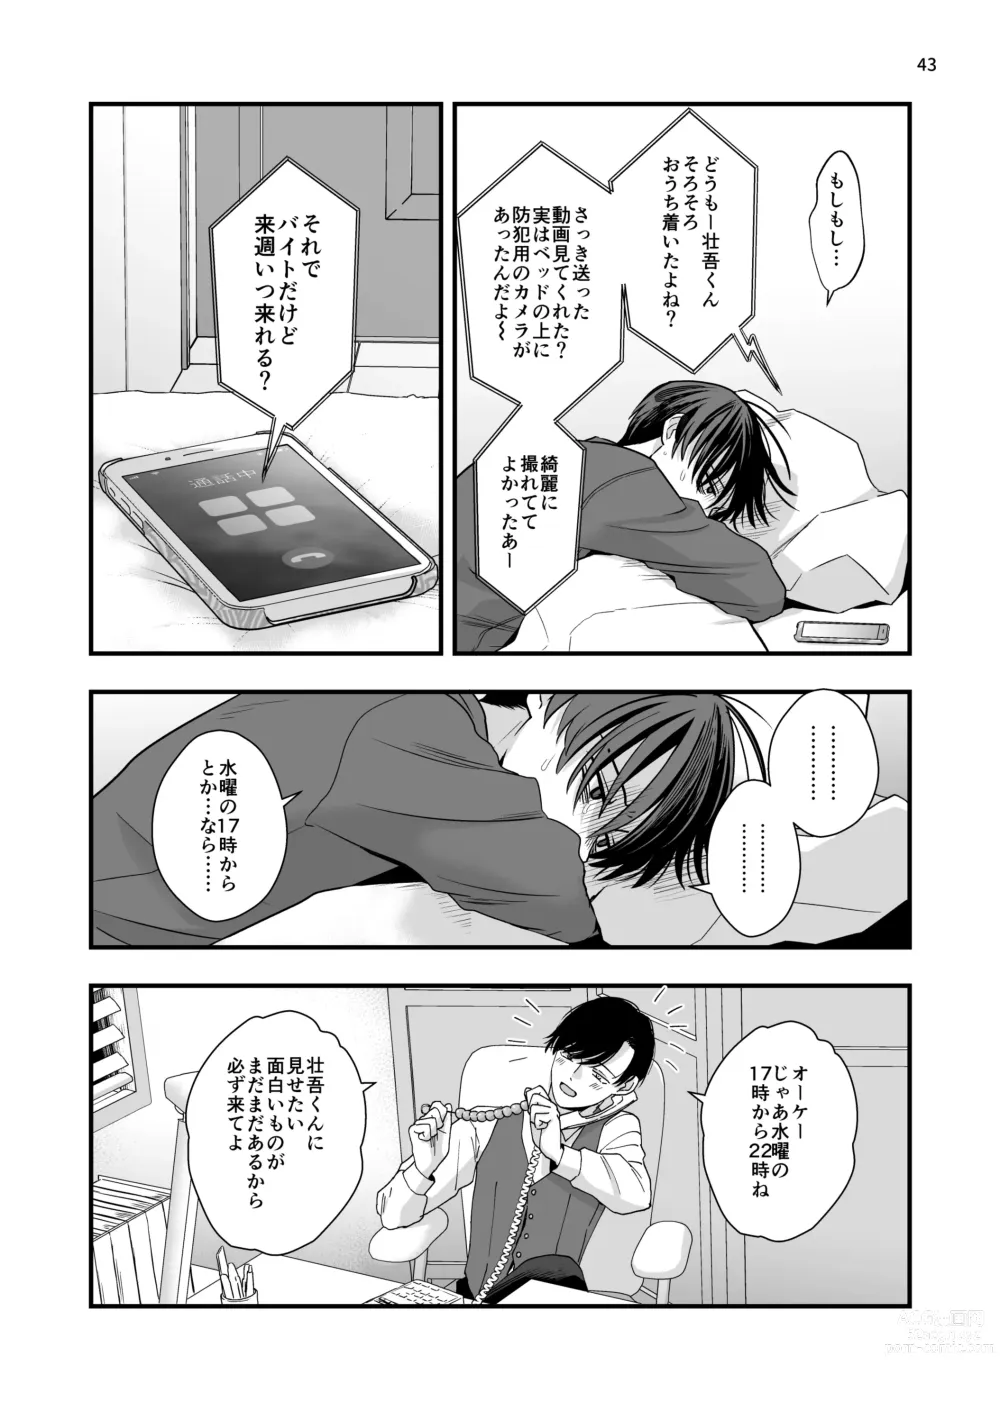 Page 43 of doujinshi Nananen Mae no Toge